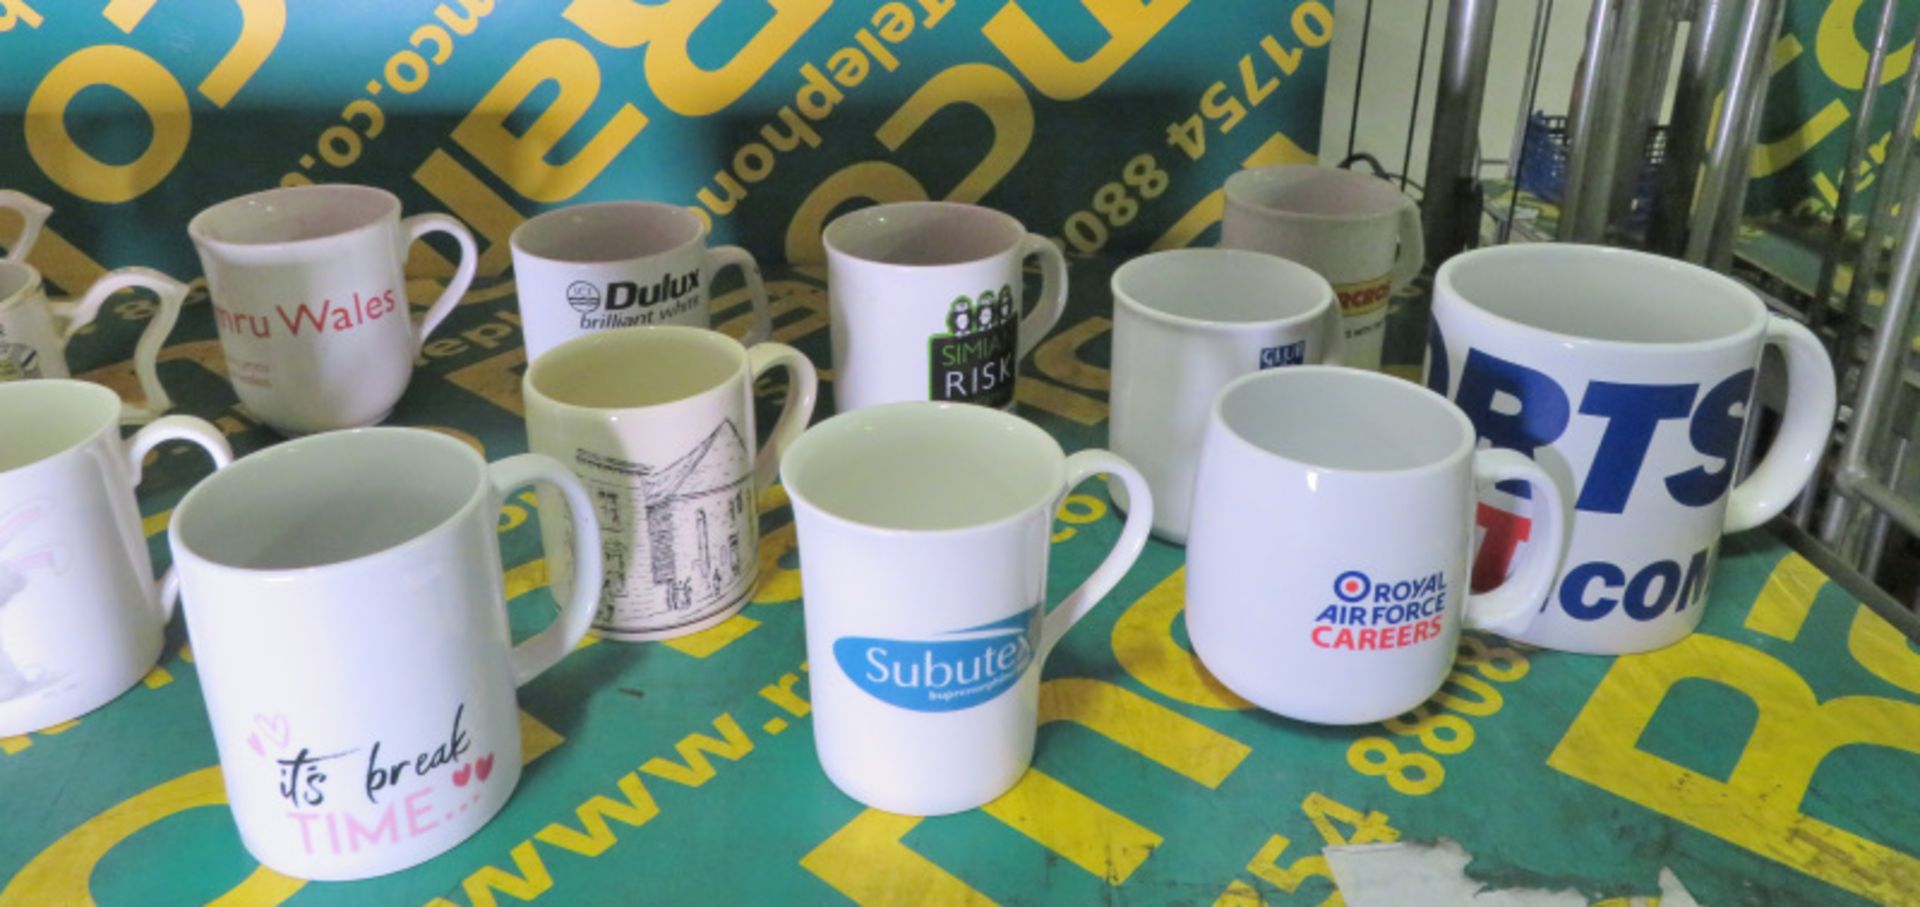 Selection of novelty mugs - Image 3 of 3